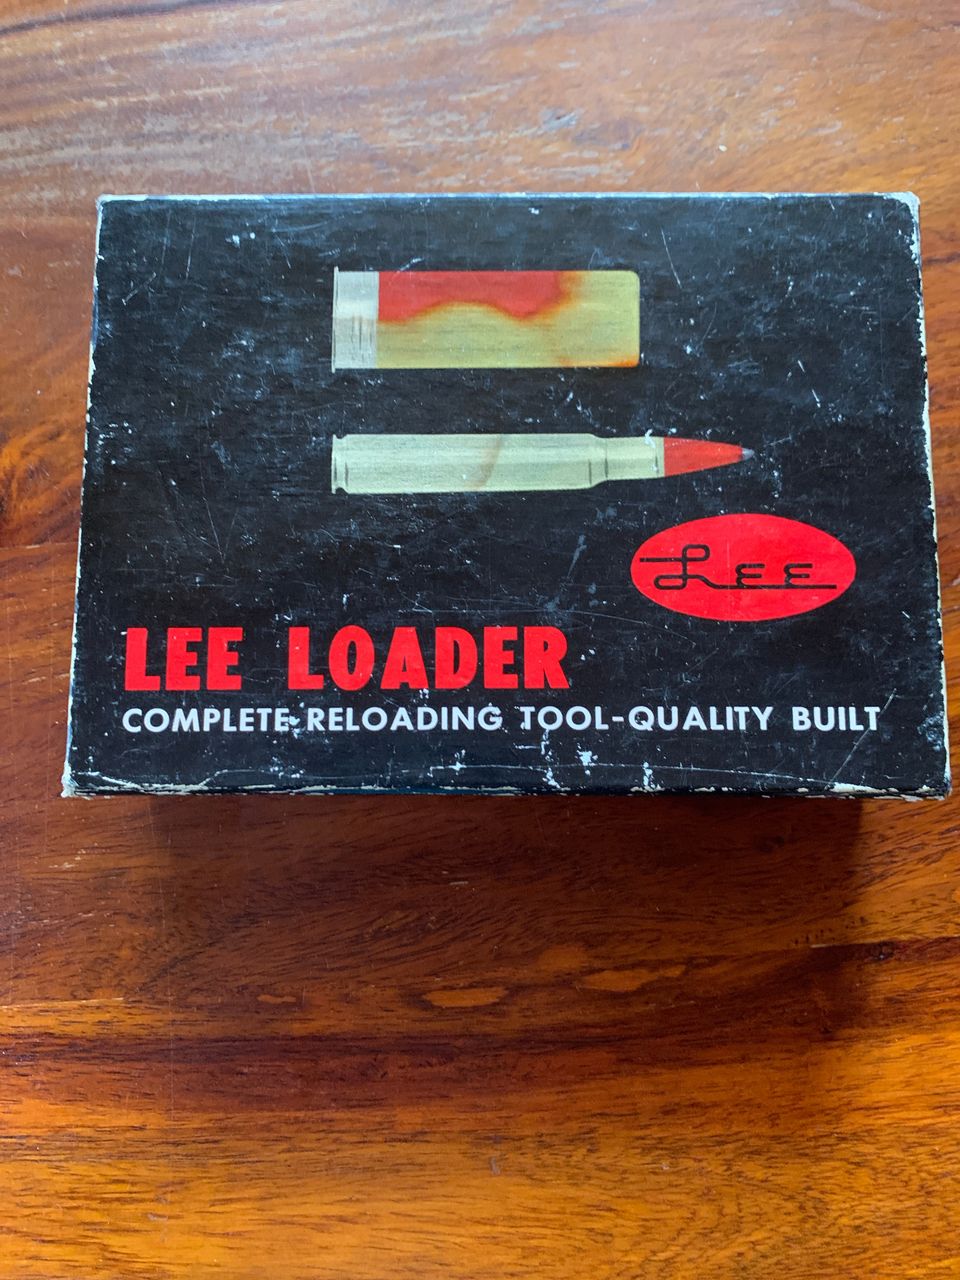 Lee Loader 357 Magnum käsilataus holkkisarja.